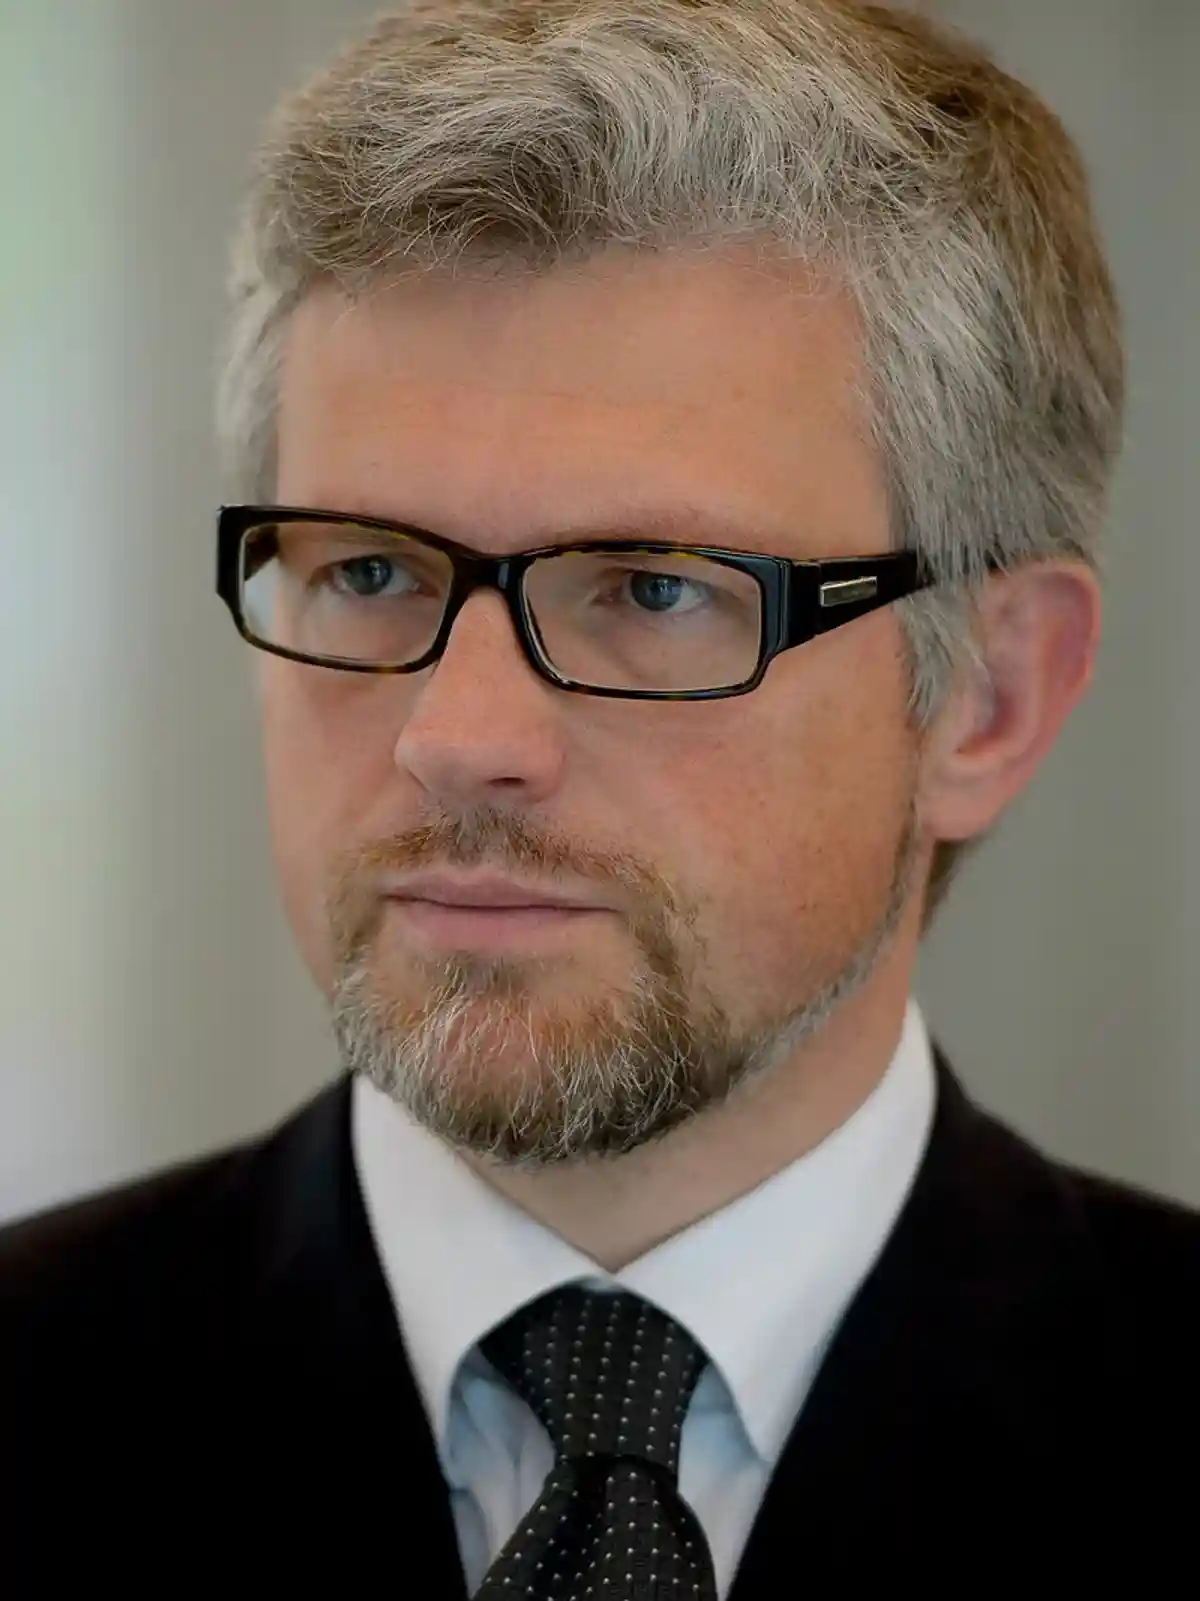 Посол Украины в Германии - Андрей Мельник. Фото: Heinrich-Böll-Stiftung / Wikipedia.org 